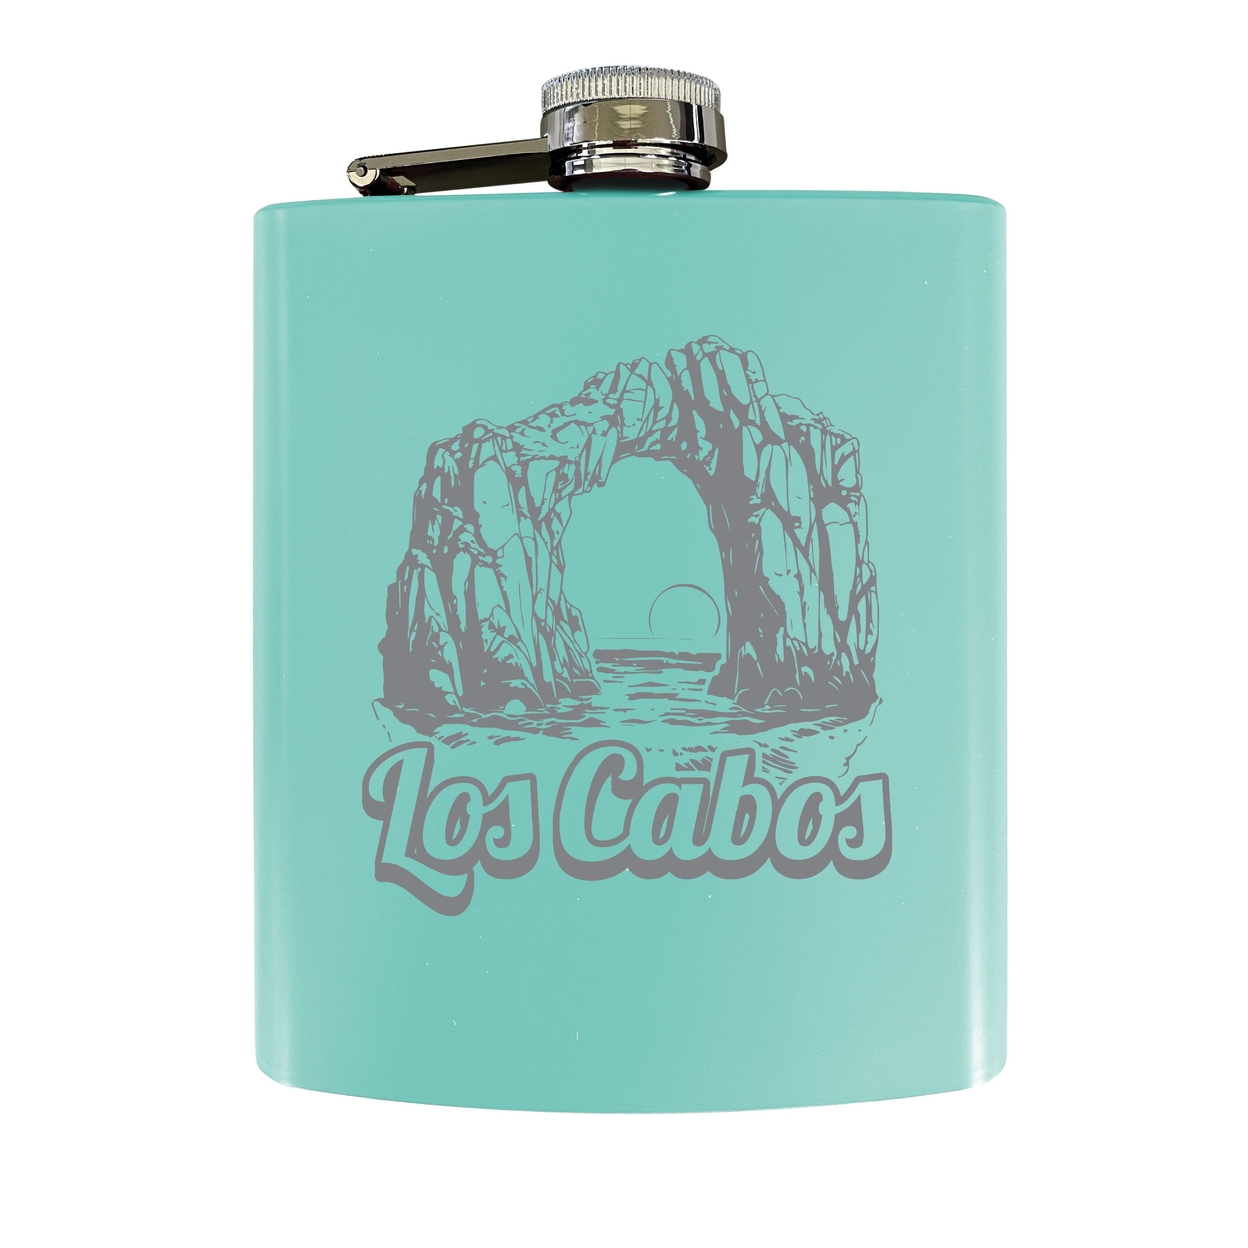 Los Cabos Mexico Souvenir 7 Oz Engraved Steel Flask Matte Finish - Black,,Single Unit